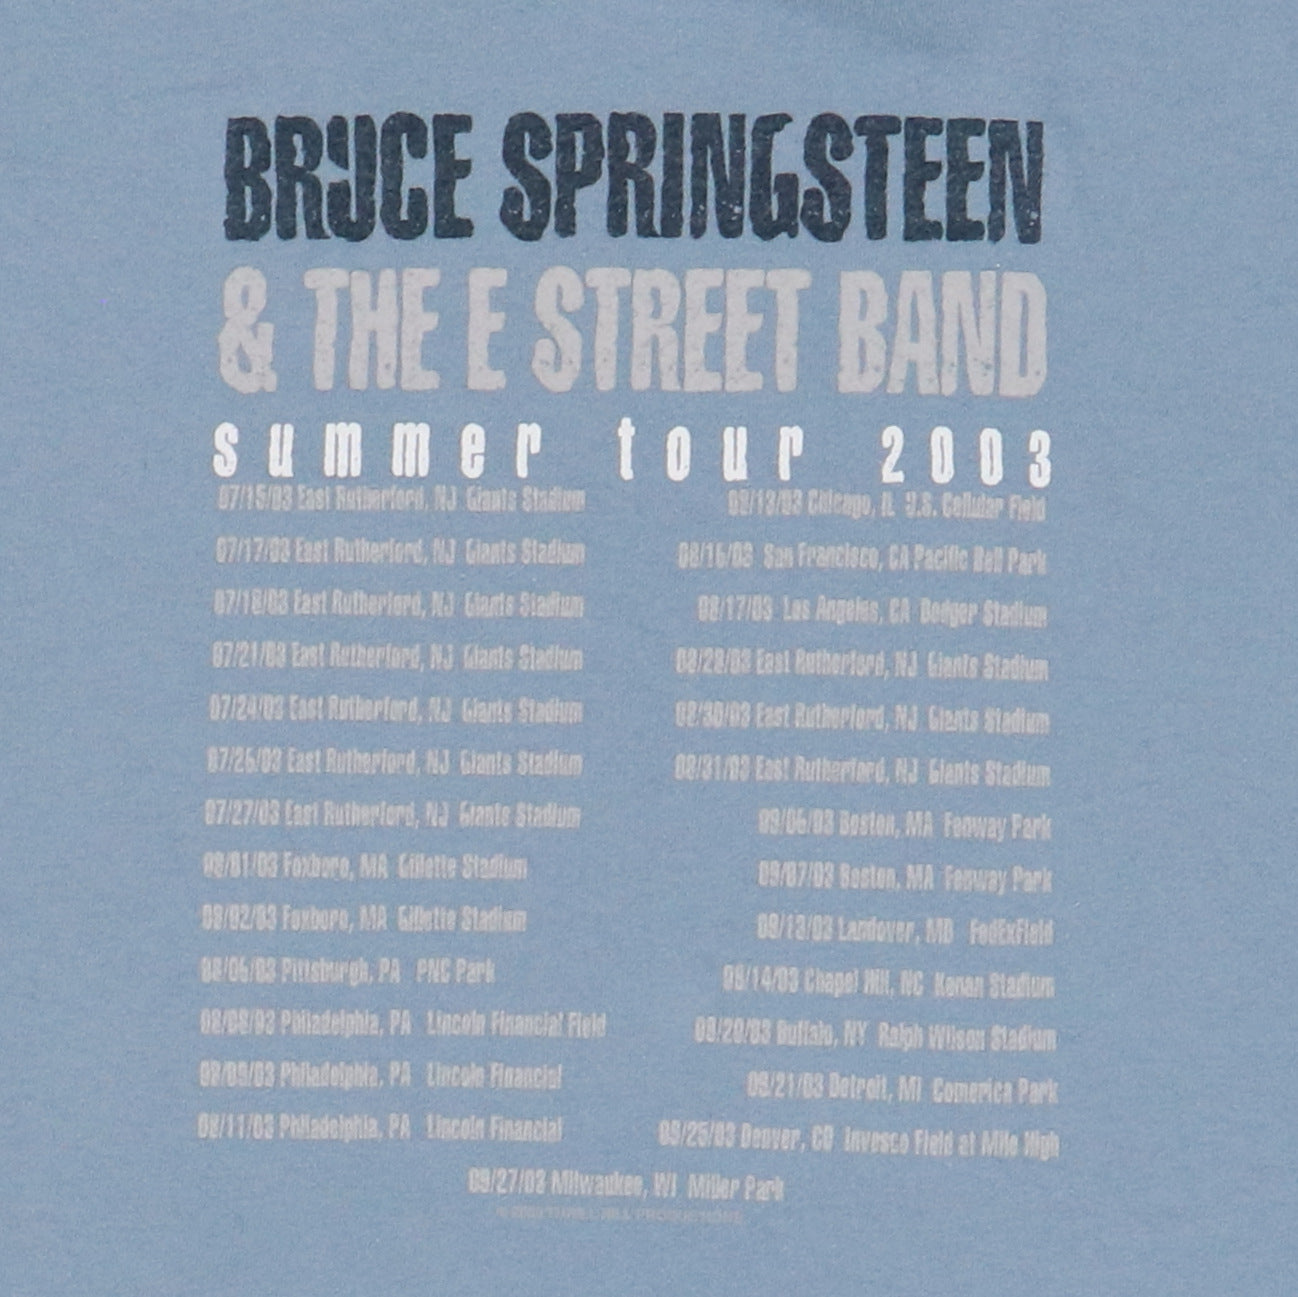 2003 Bruce Springsteen Tour Shirt